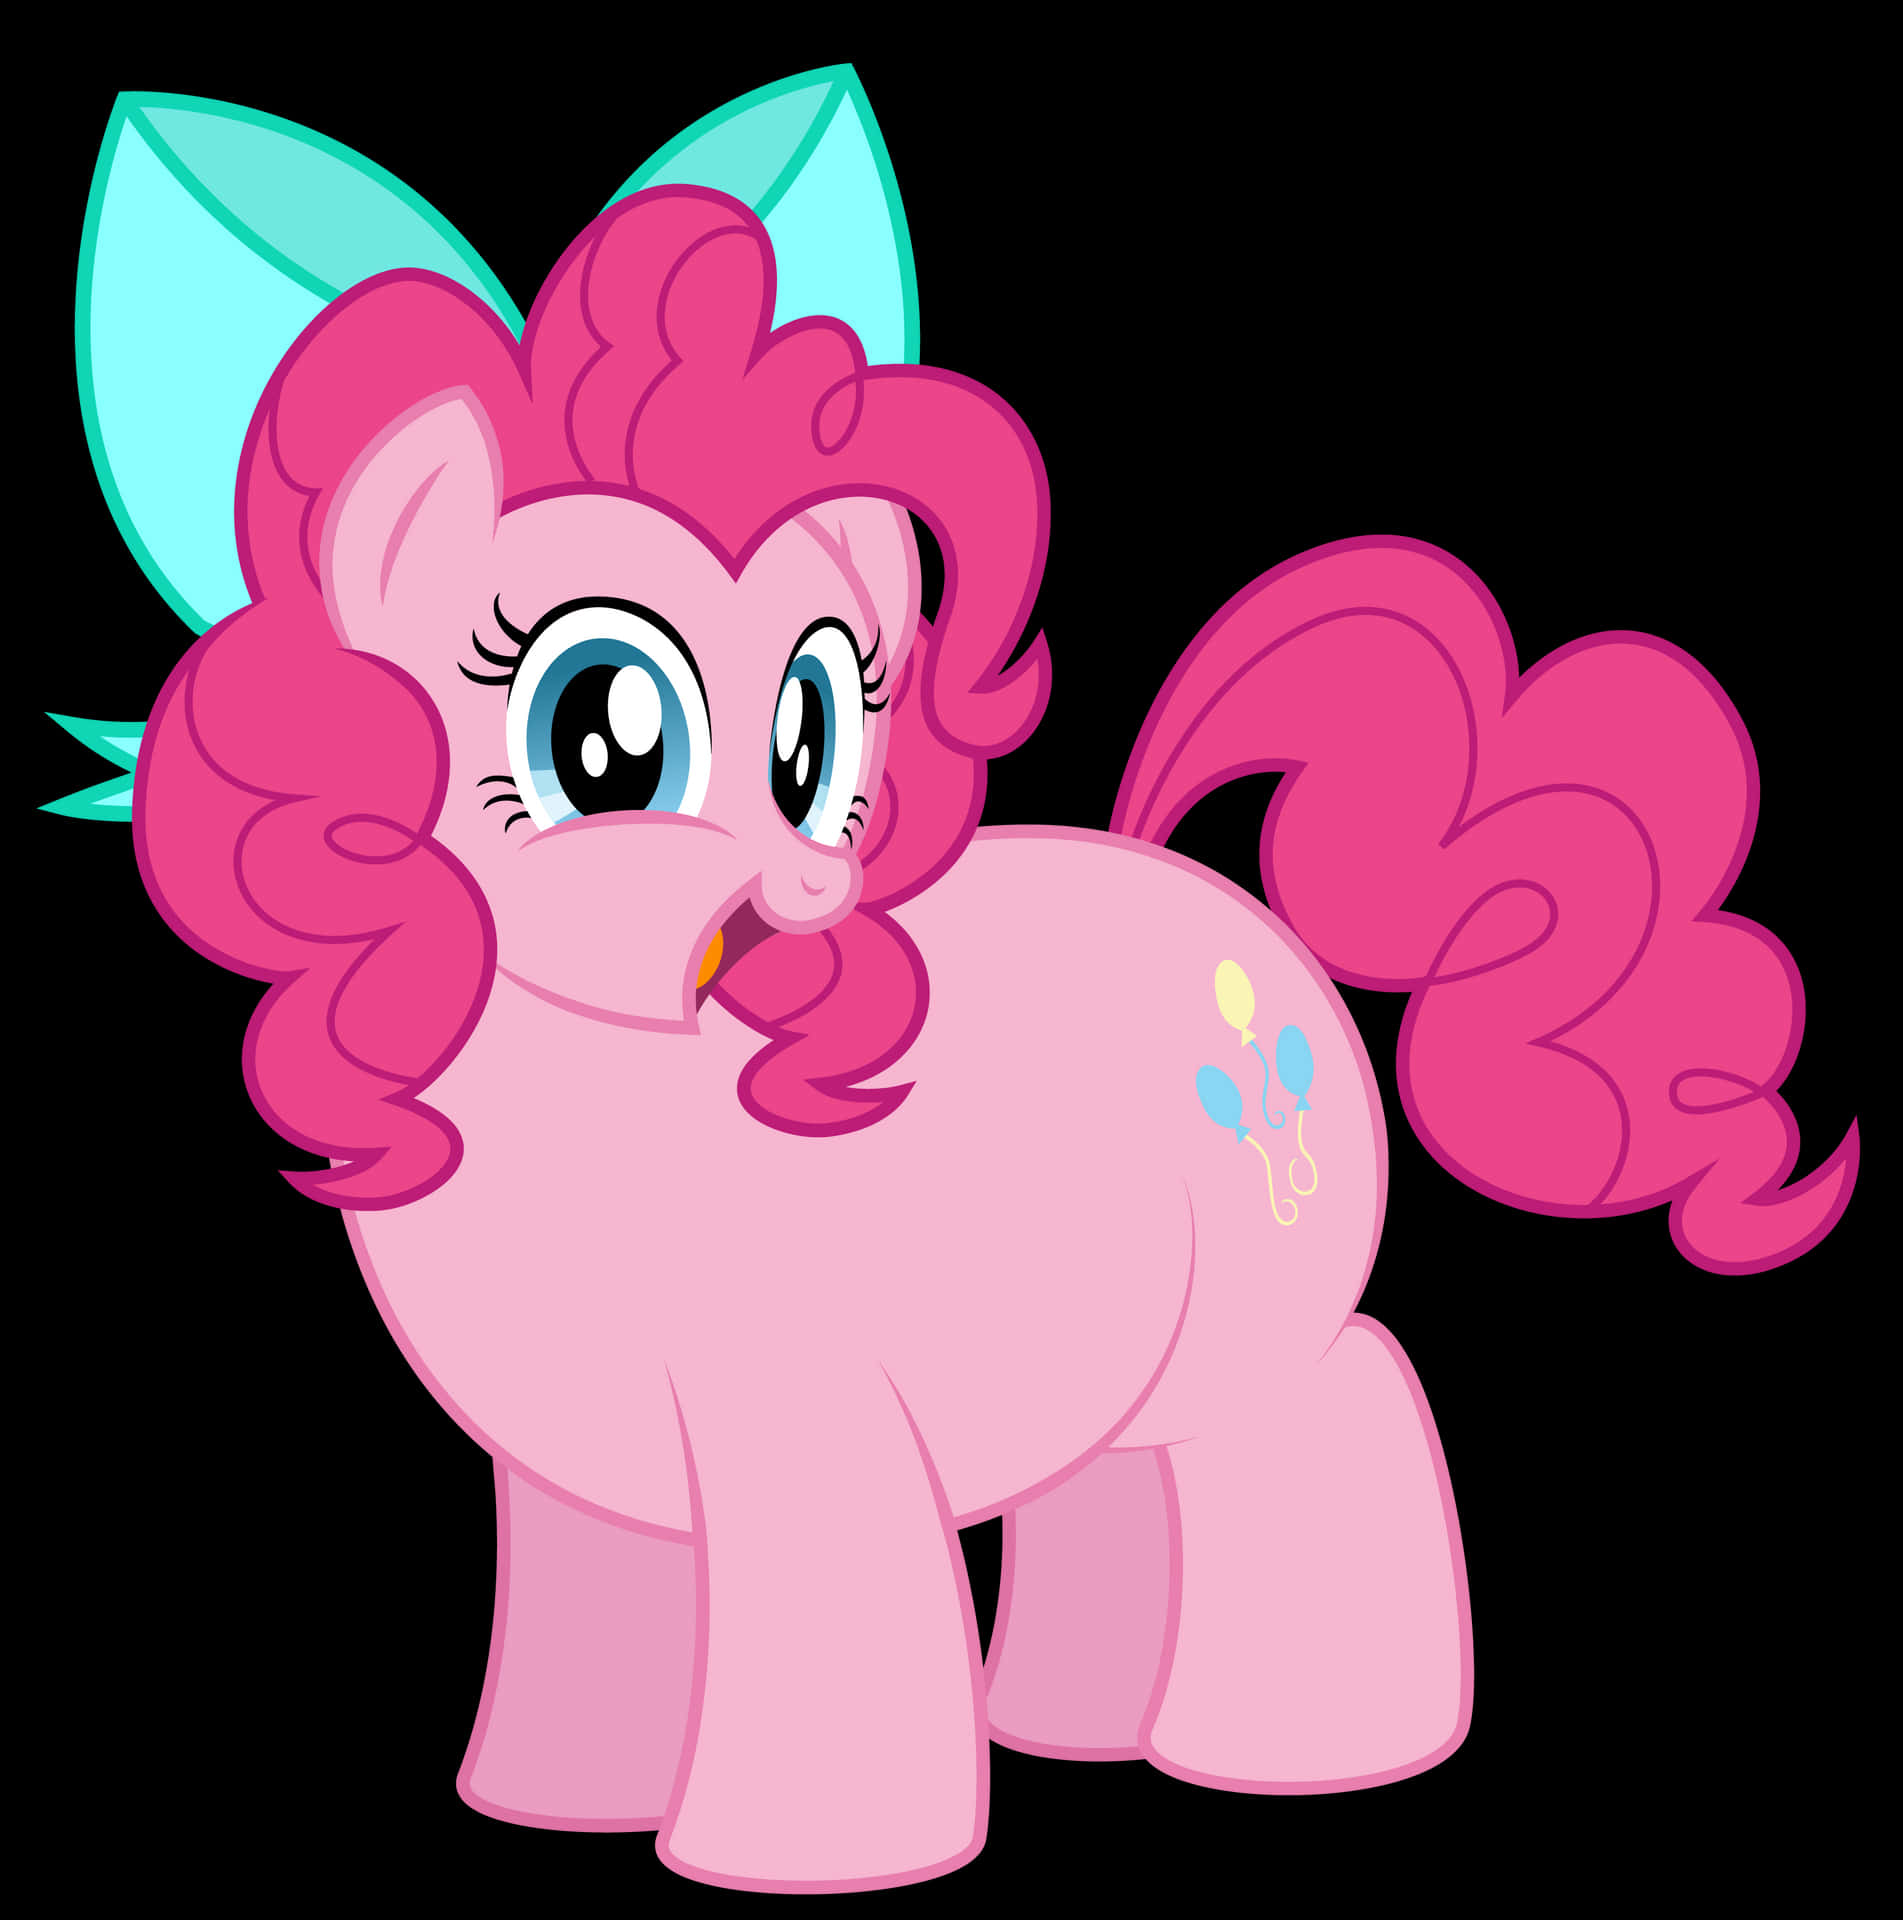 Pinkiepie De Mi Pequeño Pony, ¡celebrando Las Alegrías De La Amistad!